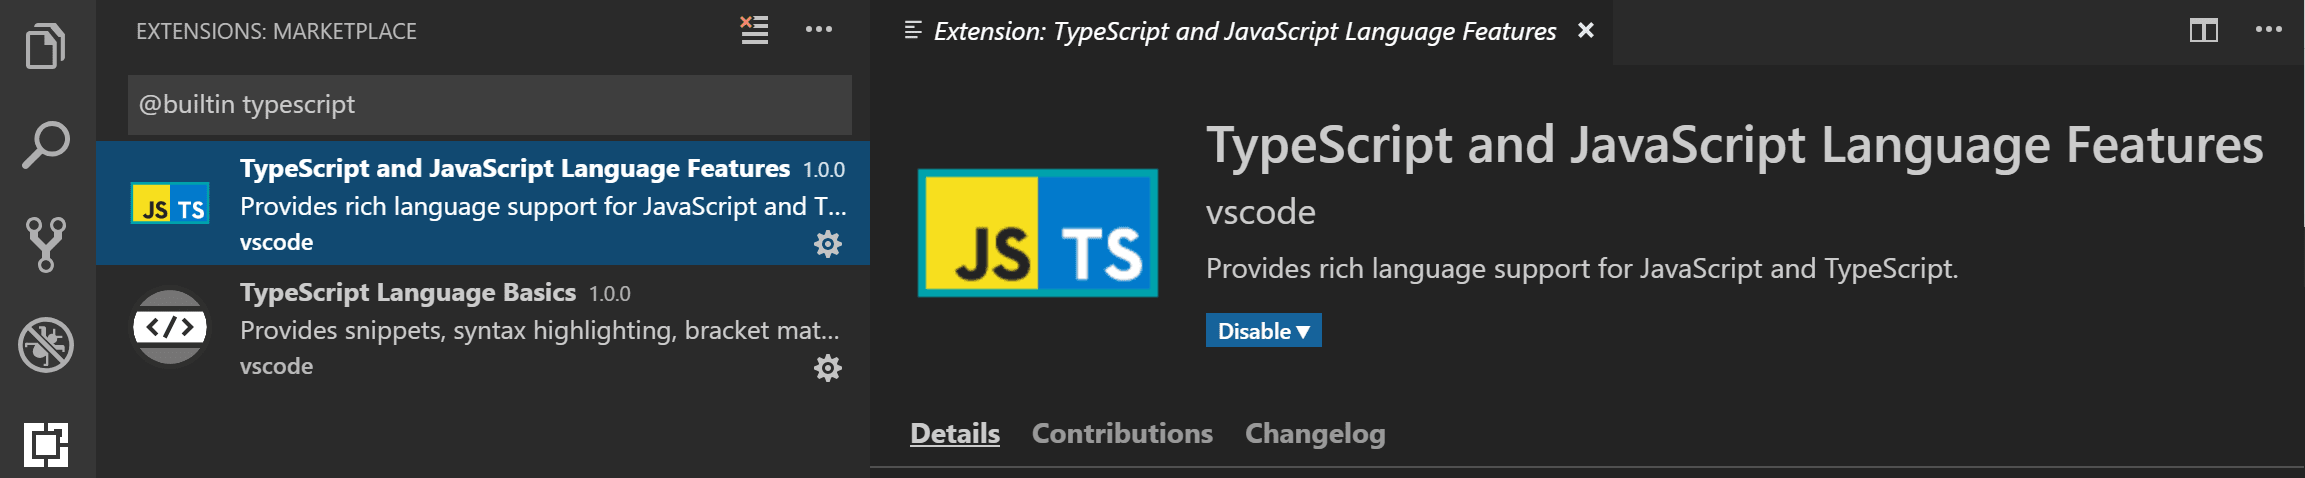 TypeScript 和 JavaScript 语言功能扩展